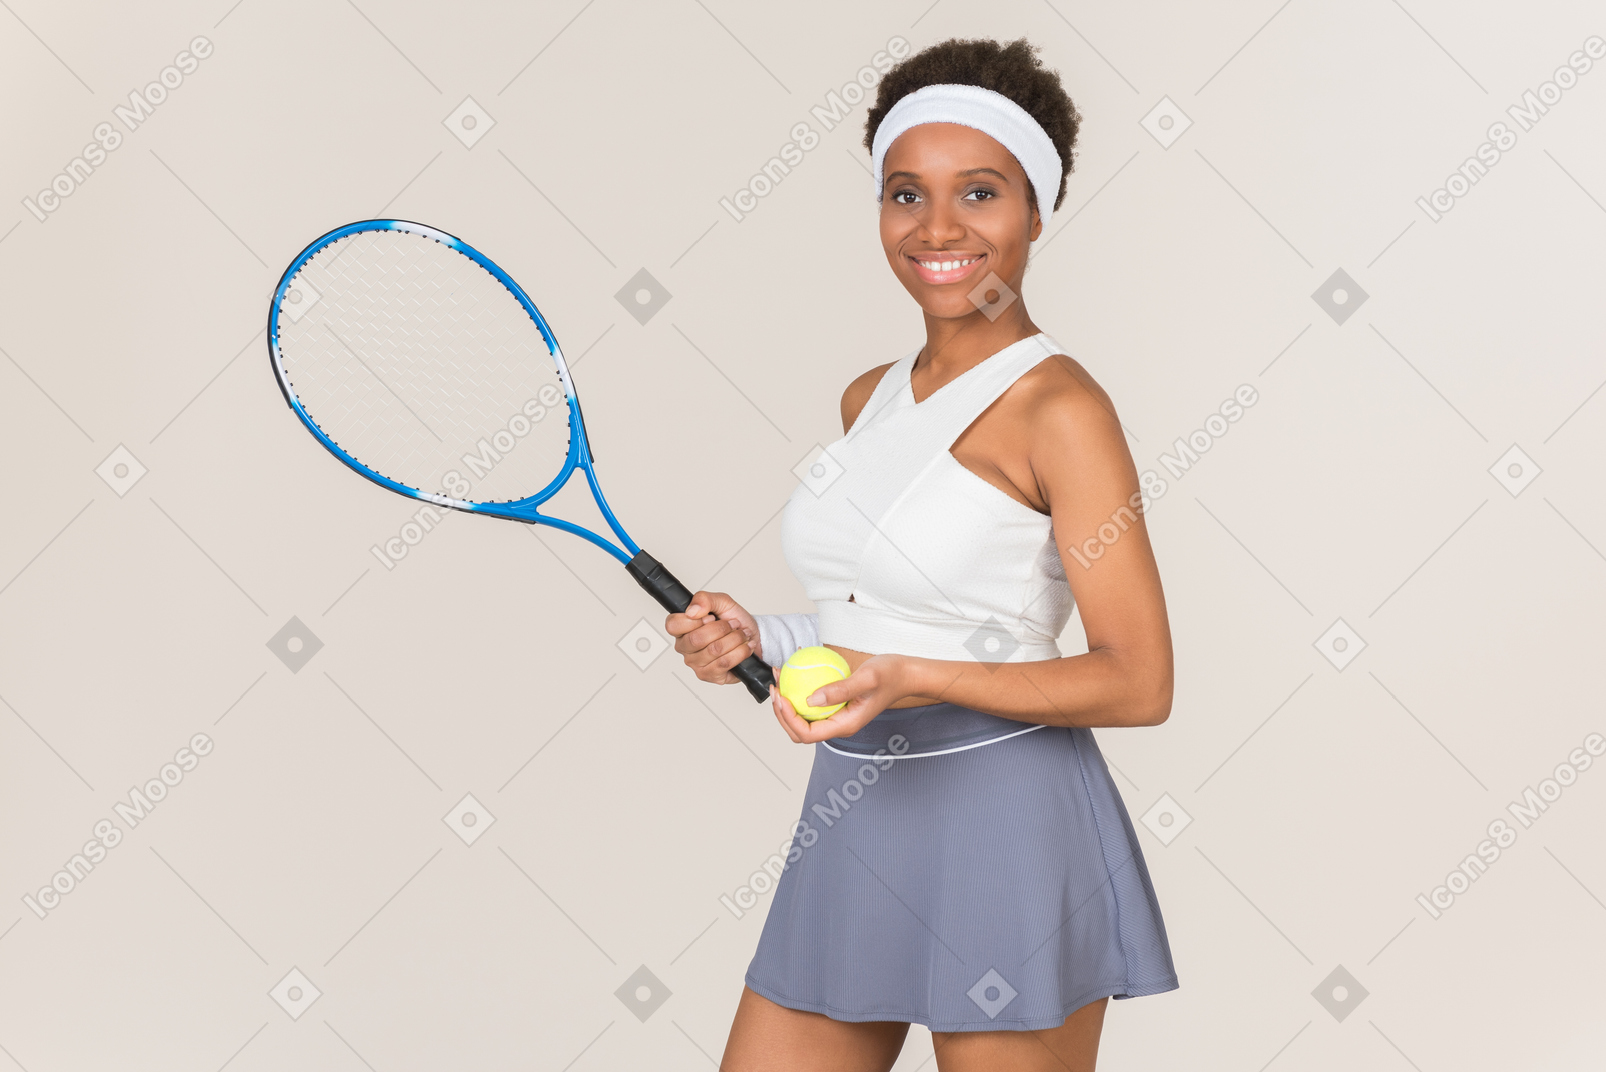 Denn tennis ist wirklich mein sport